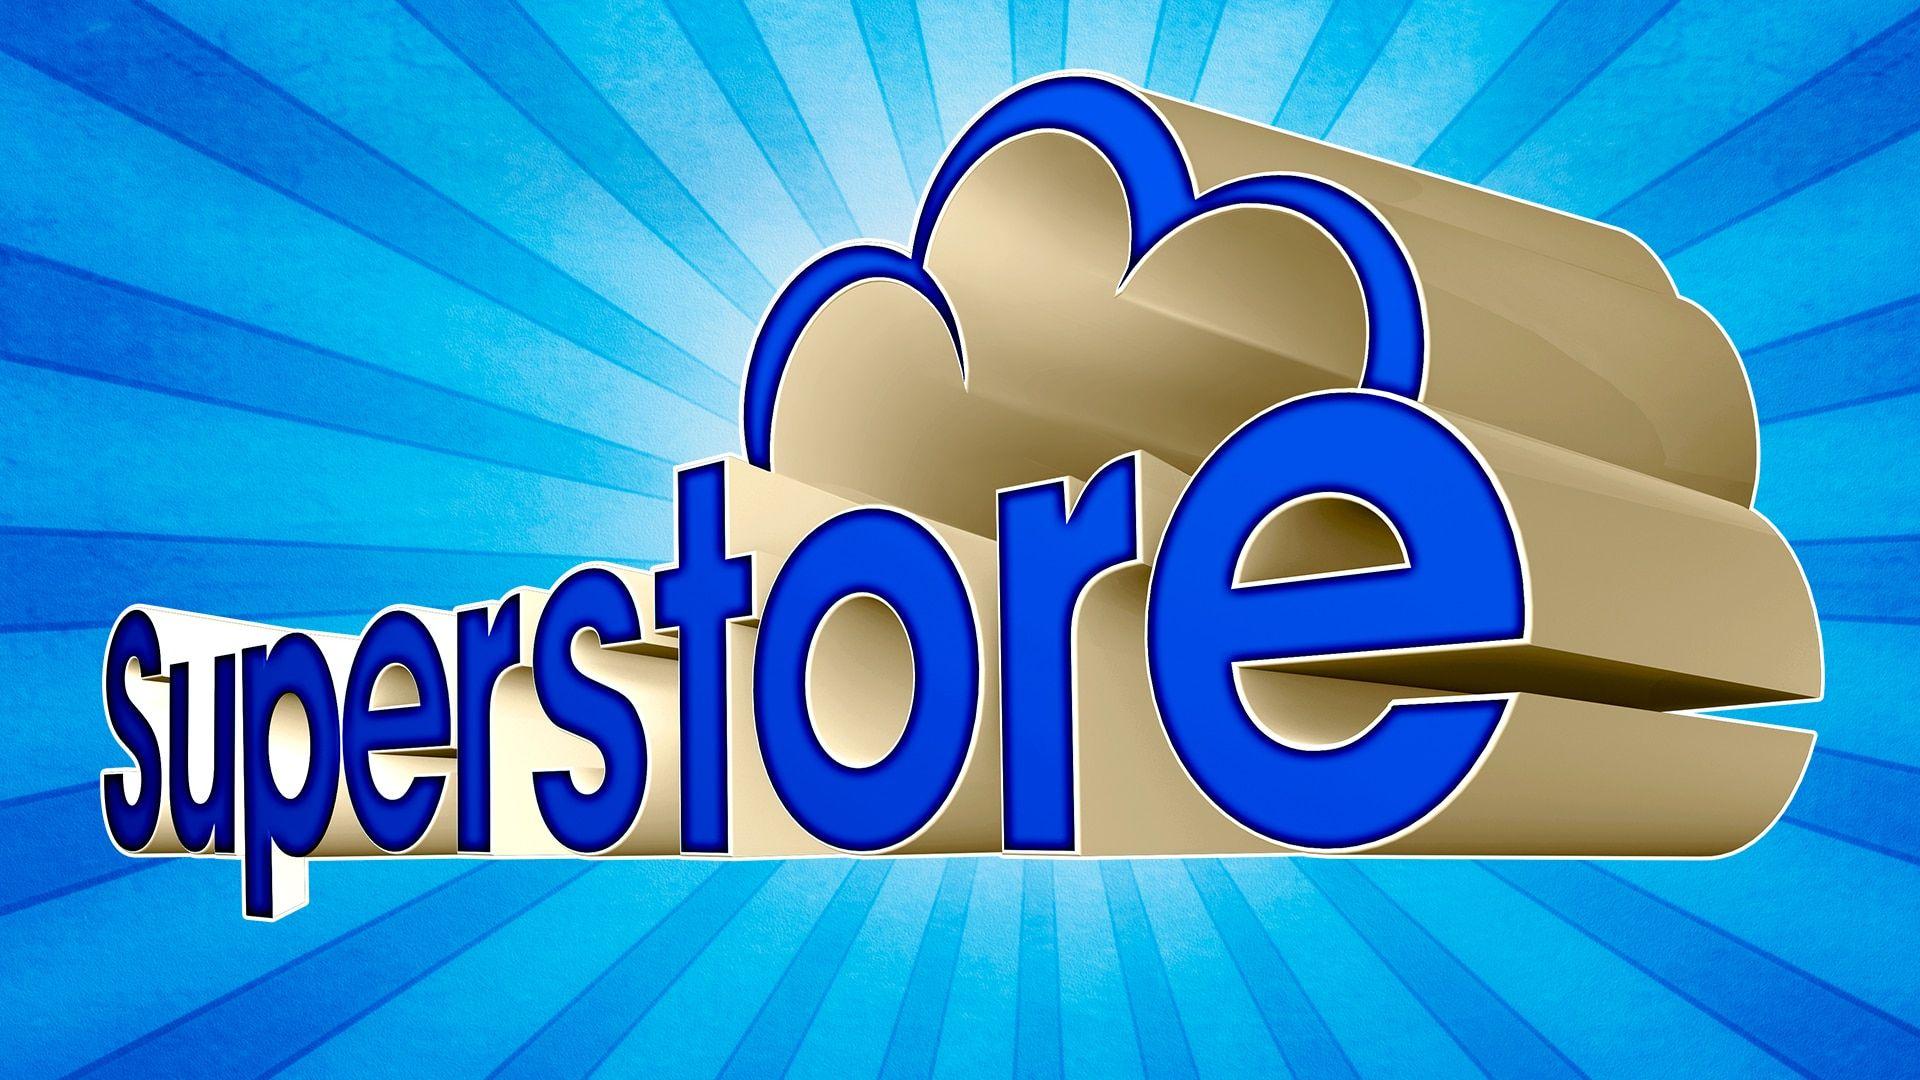 Superstore Logo - Superstore - NBC.com